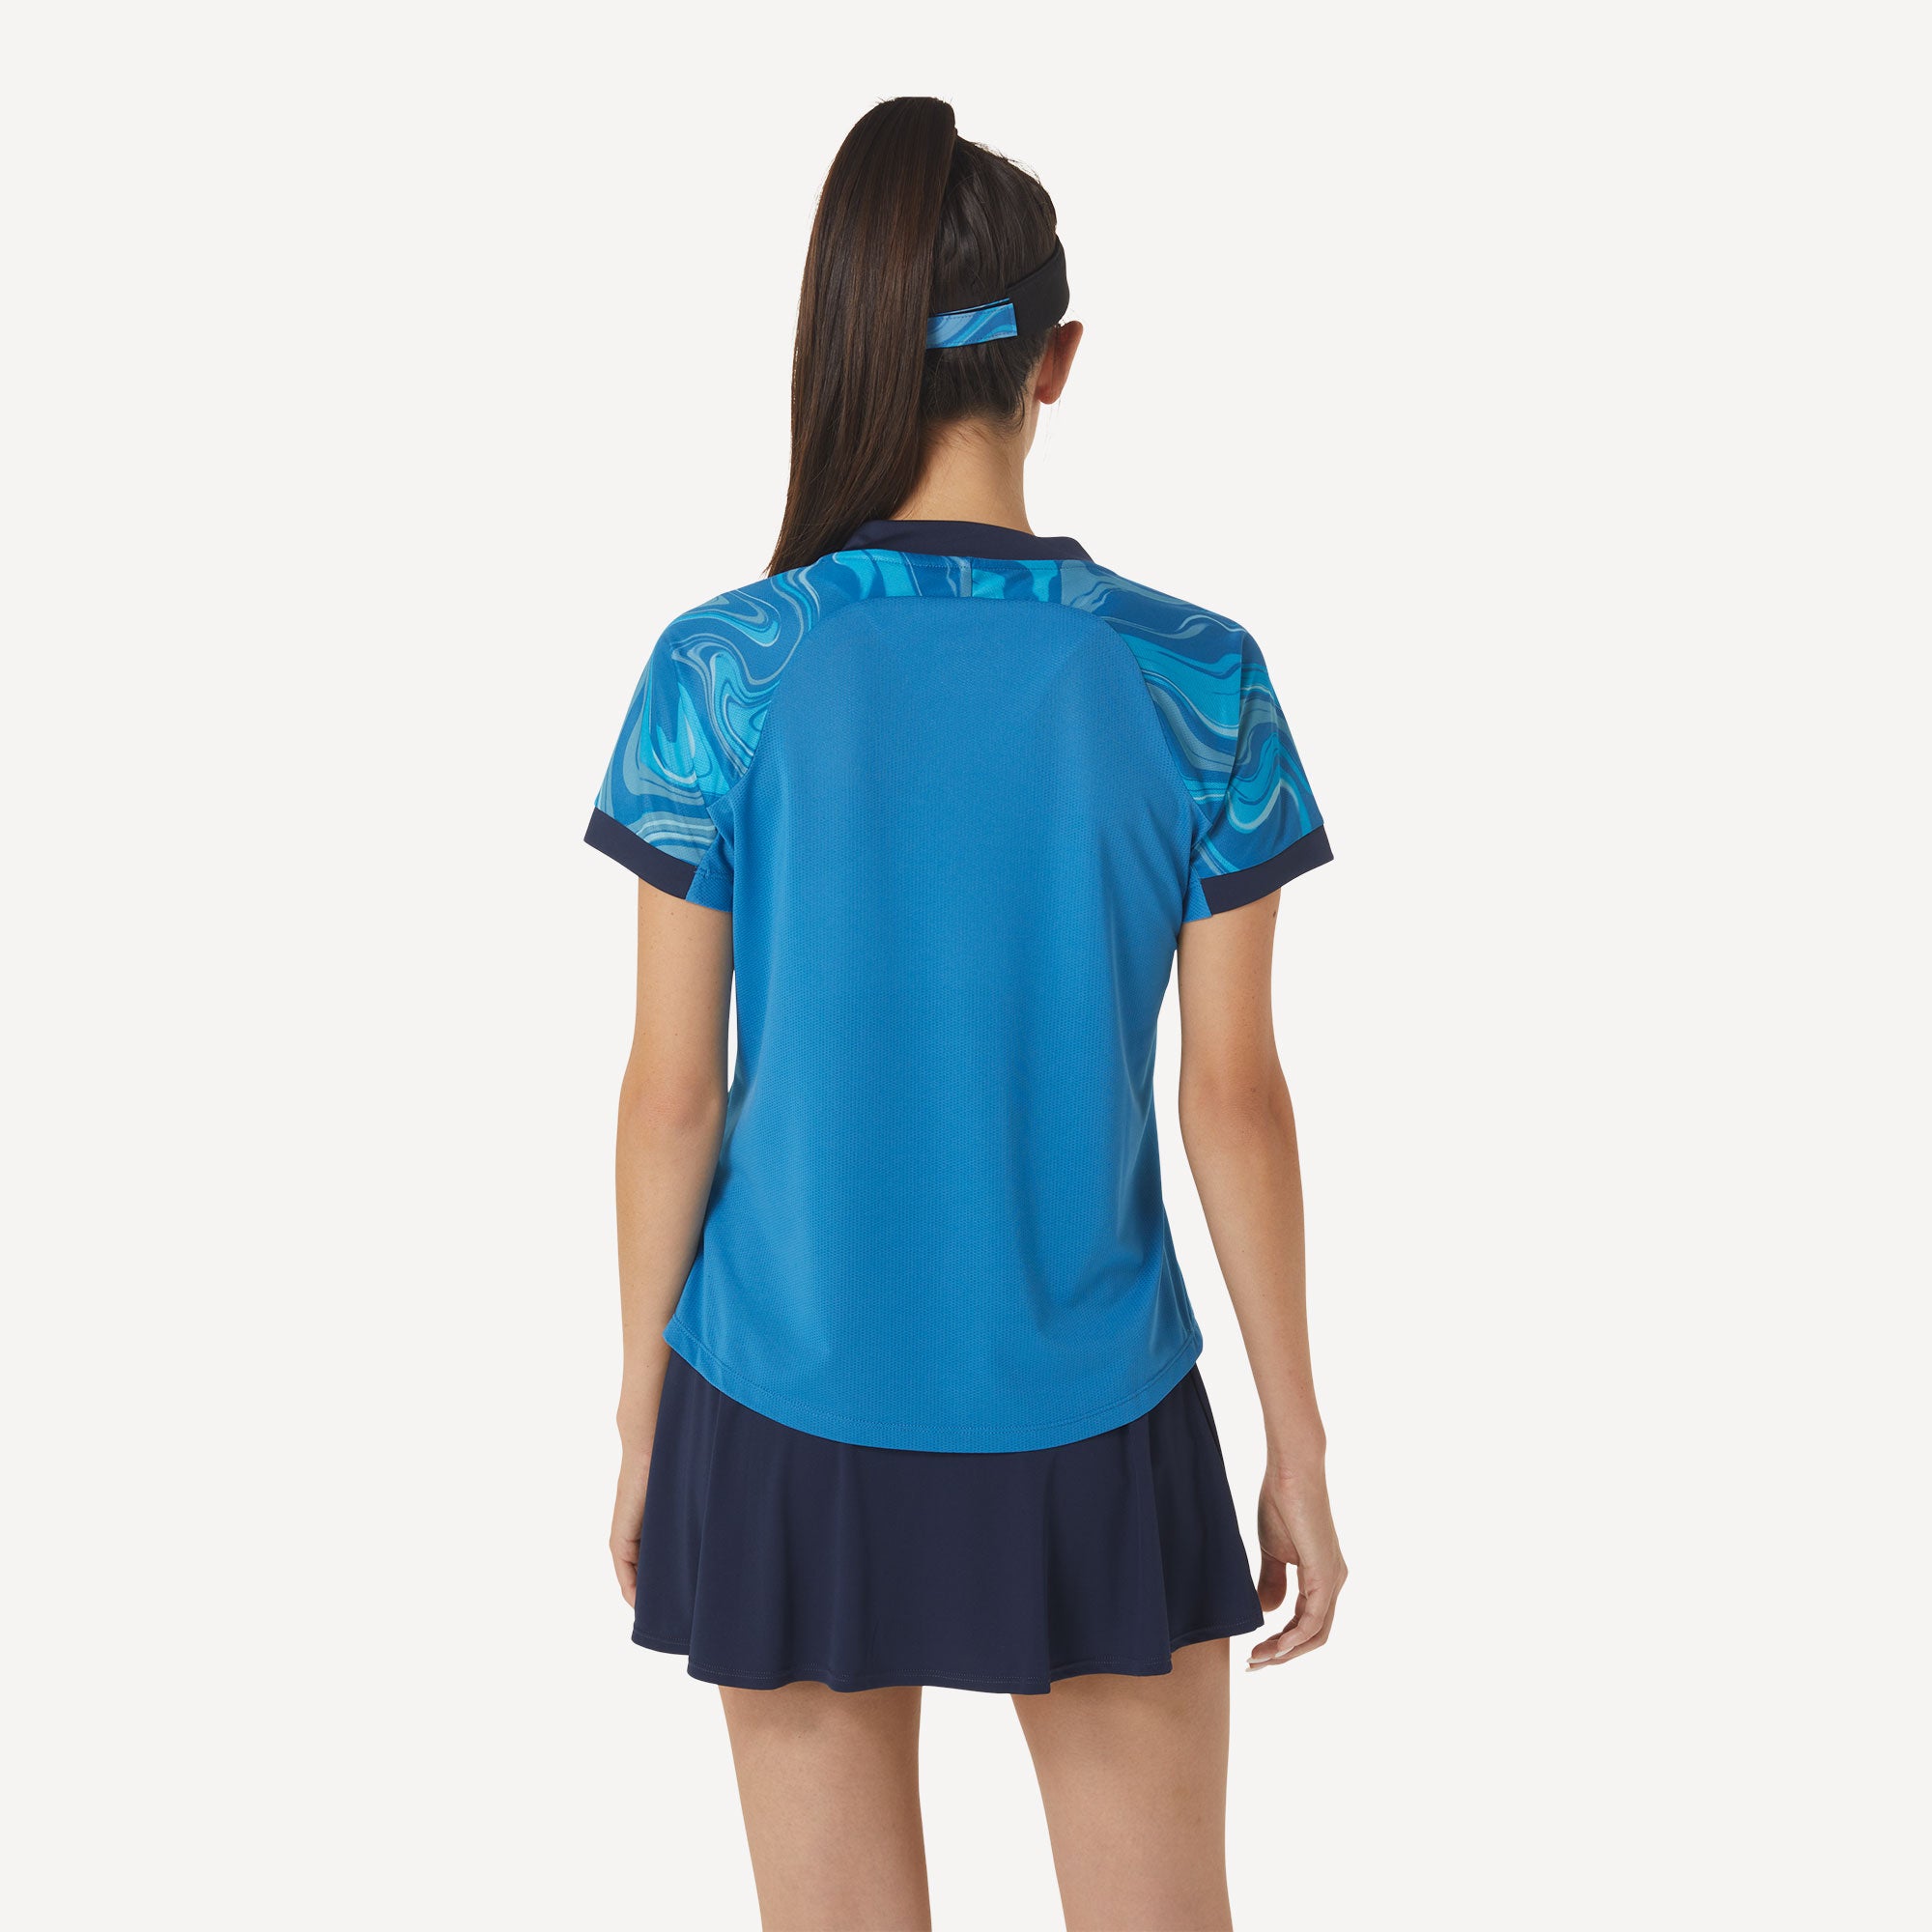 ASICS Match Women's Graphic Tennis Shirt Blue (2)